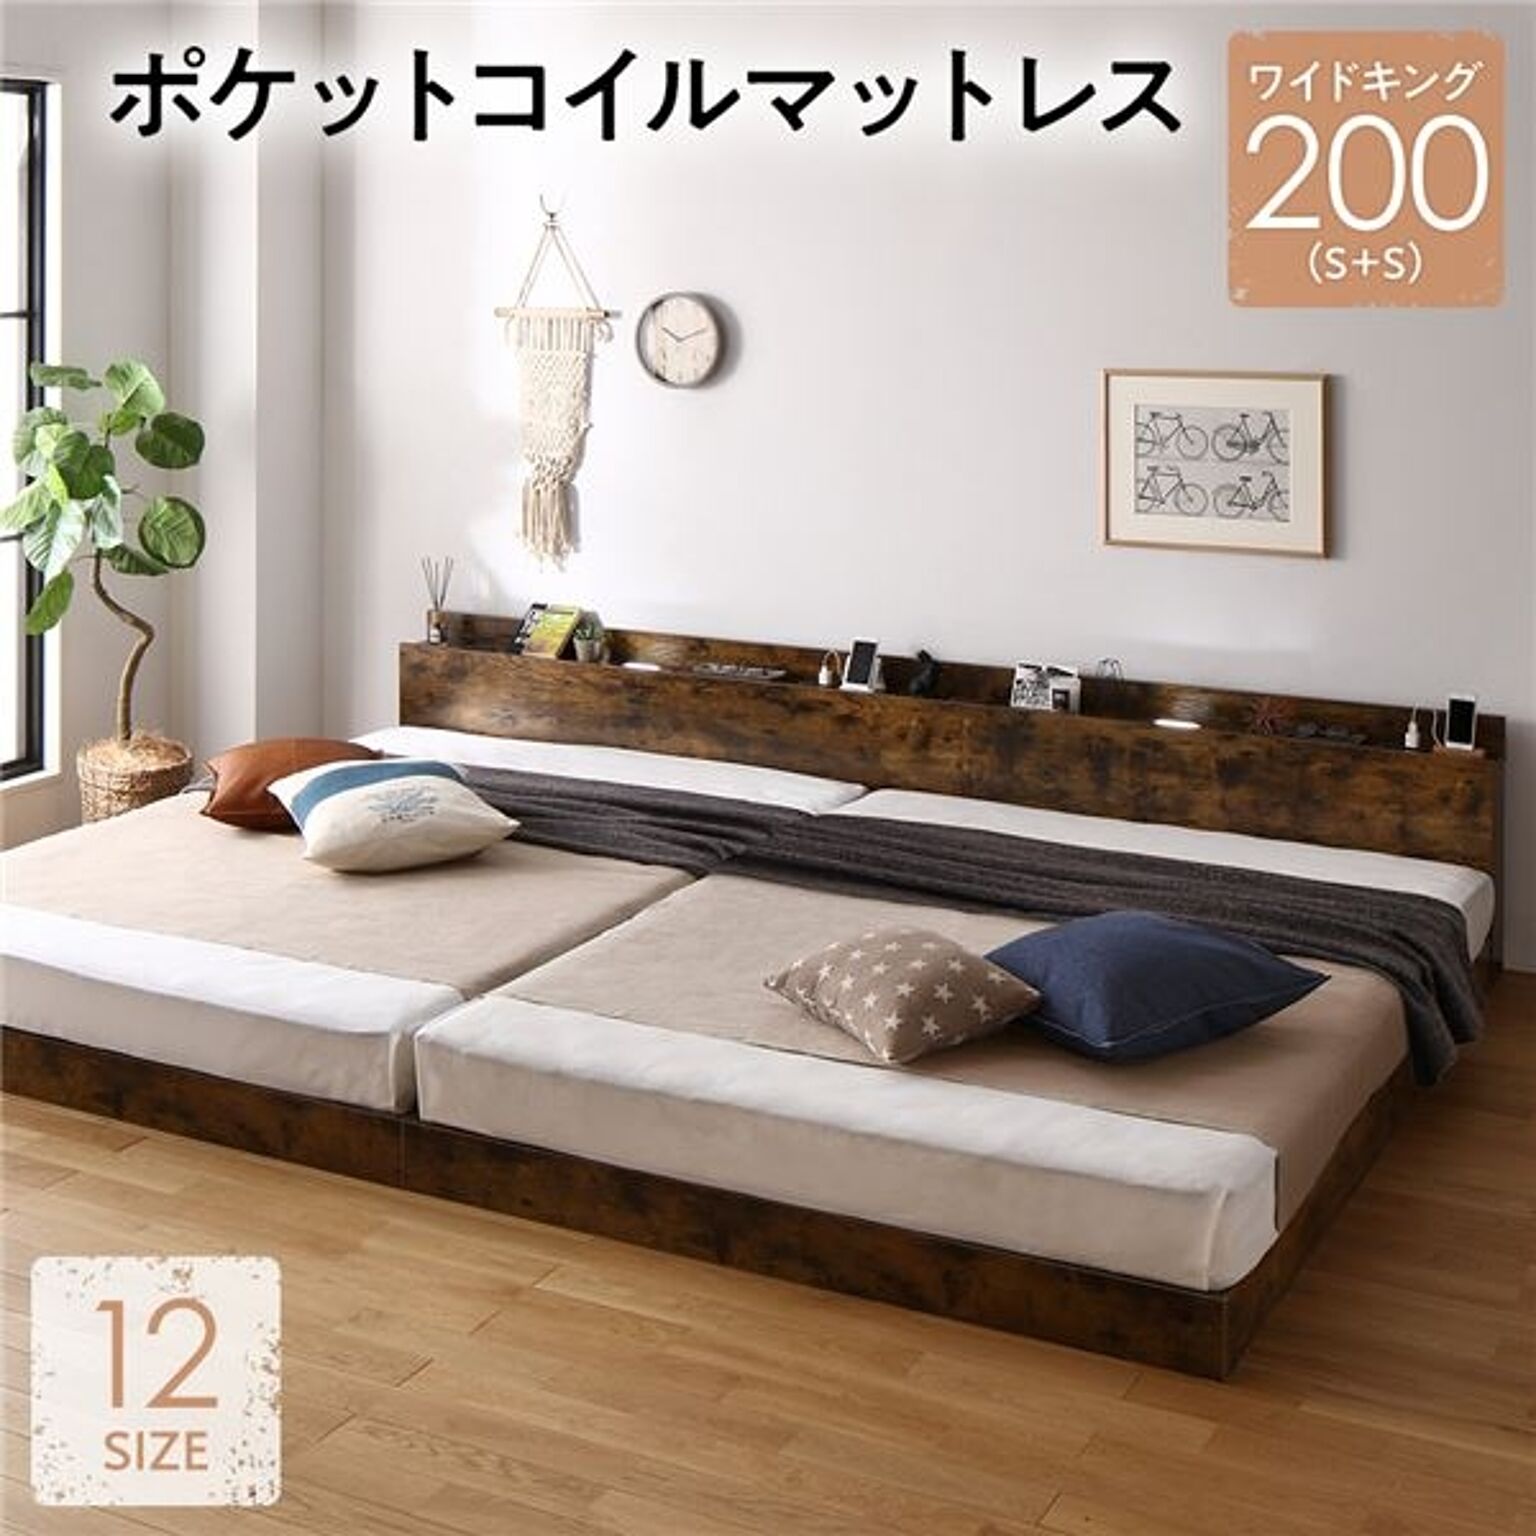 ベッド ワイドキング 200(S+S) ベッドフレームのみ ヴィンテージブラウン 低床 連結 すのこ 照明 宮付 棚付 コンセント ベッド